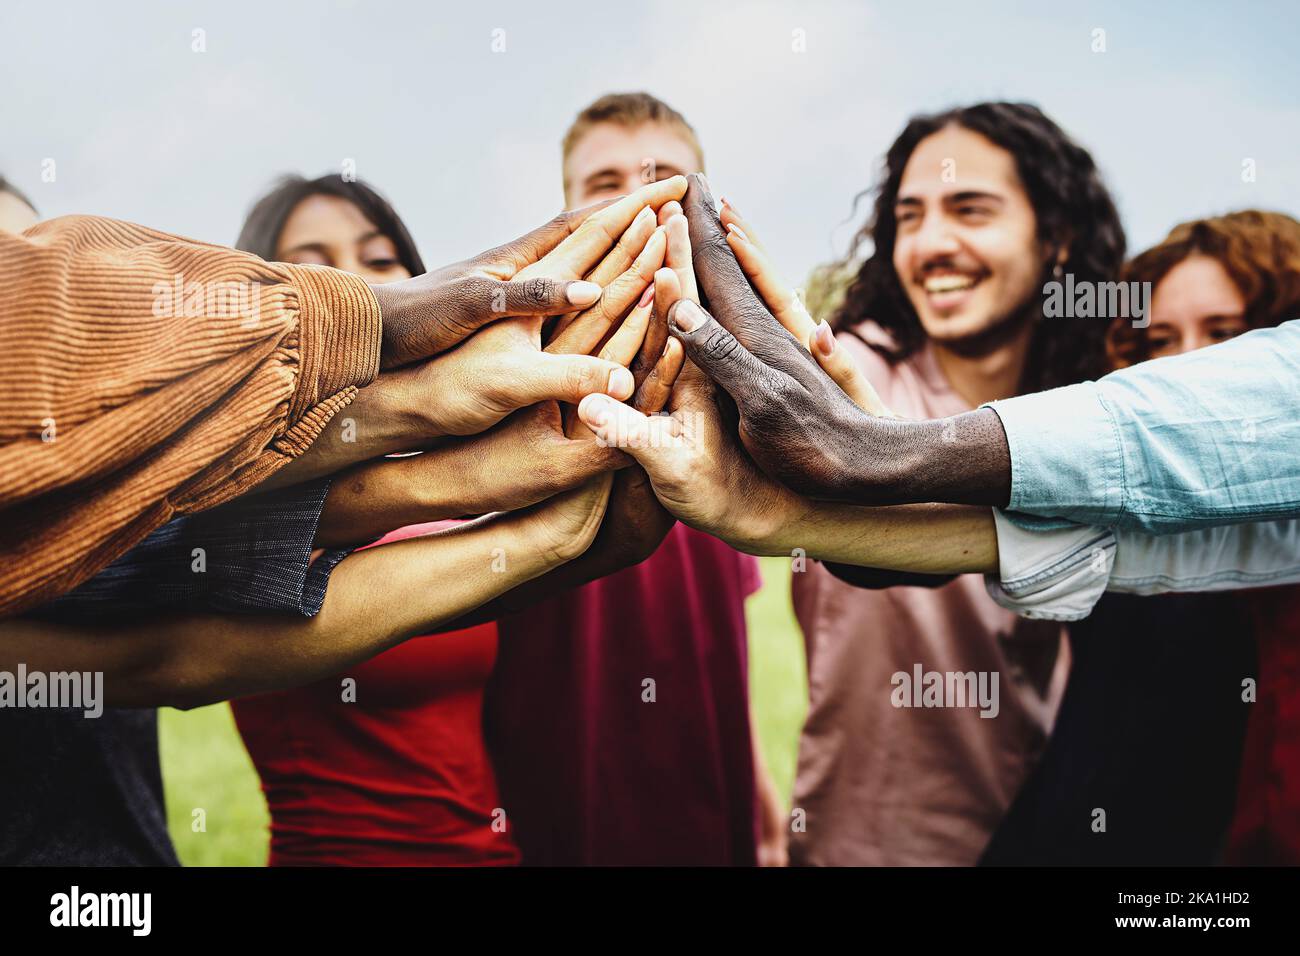 Gruppe von multiethnischen Gemeinschaft von glücklichen Menschen, die Spaß haben, die Hände in den Park zu verbinden - multiethnische vielfältige Gruppe von Studenten hoch fünf - Vertrauen Stockfoto